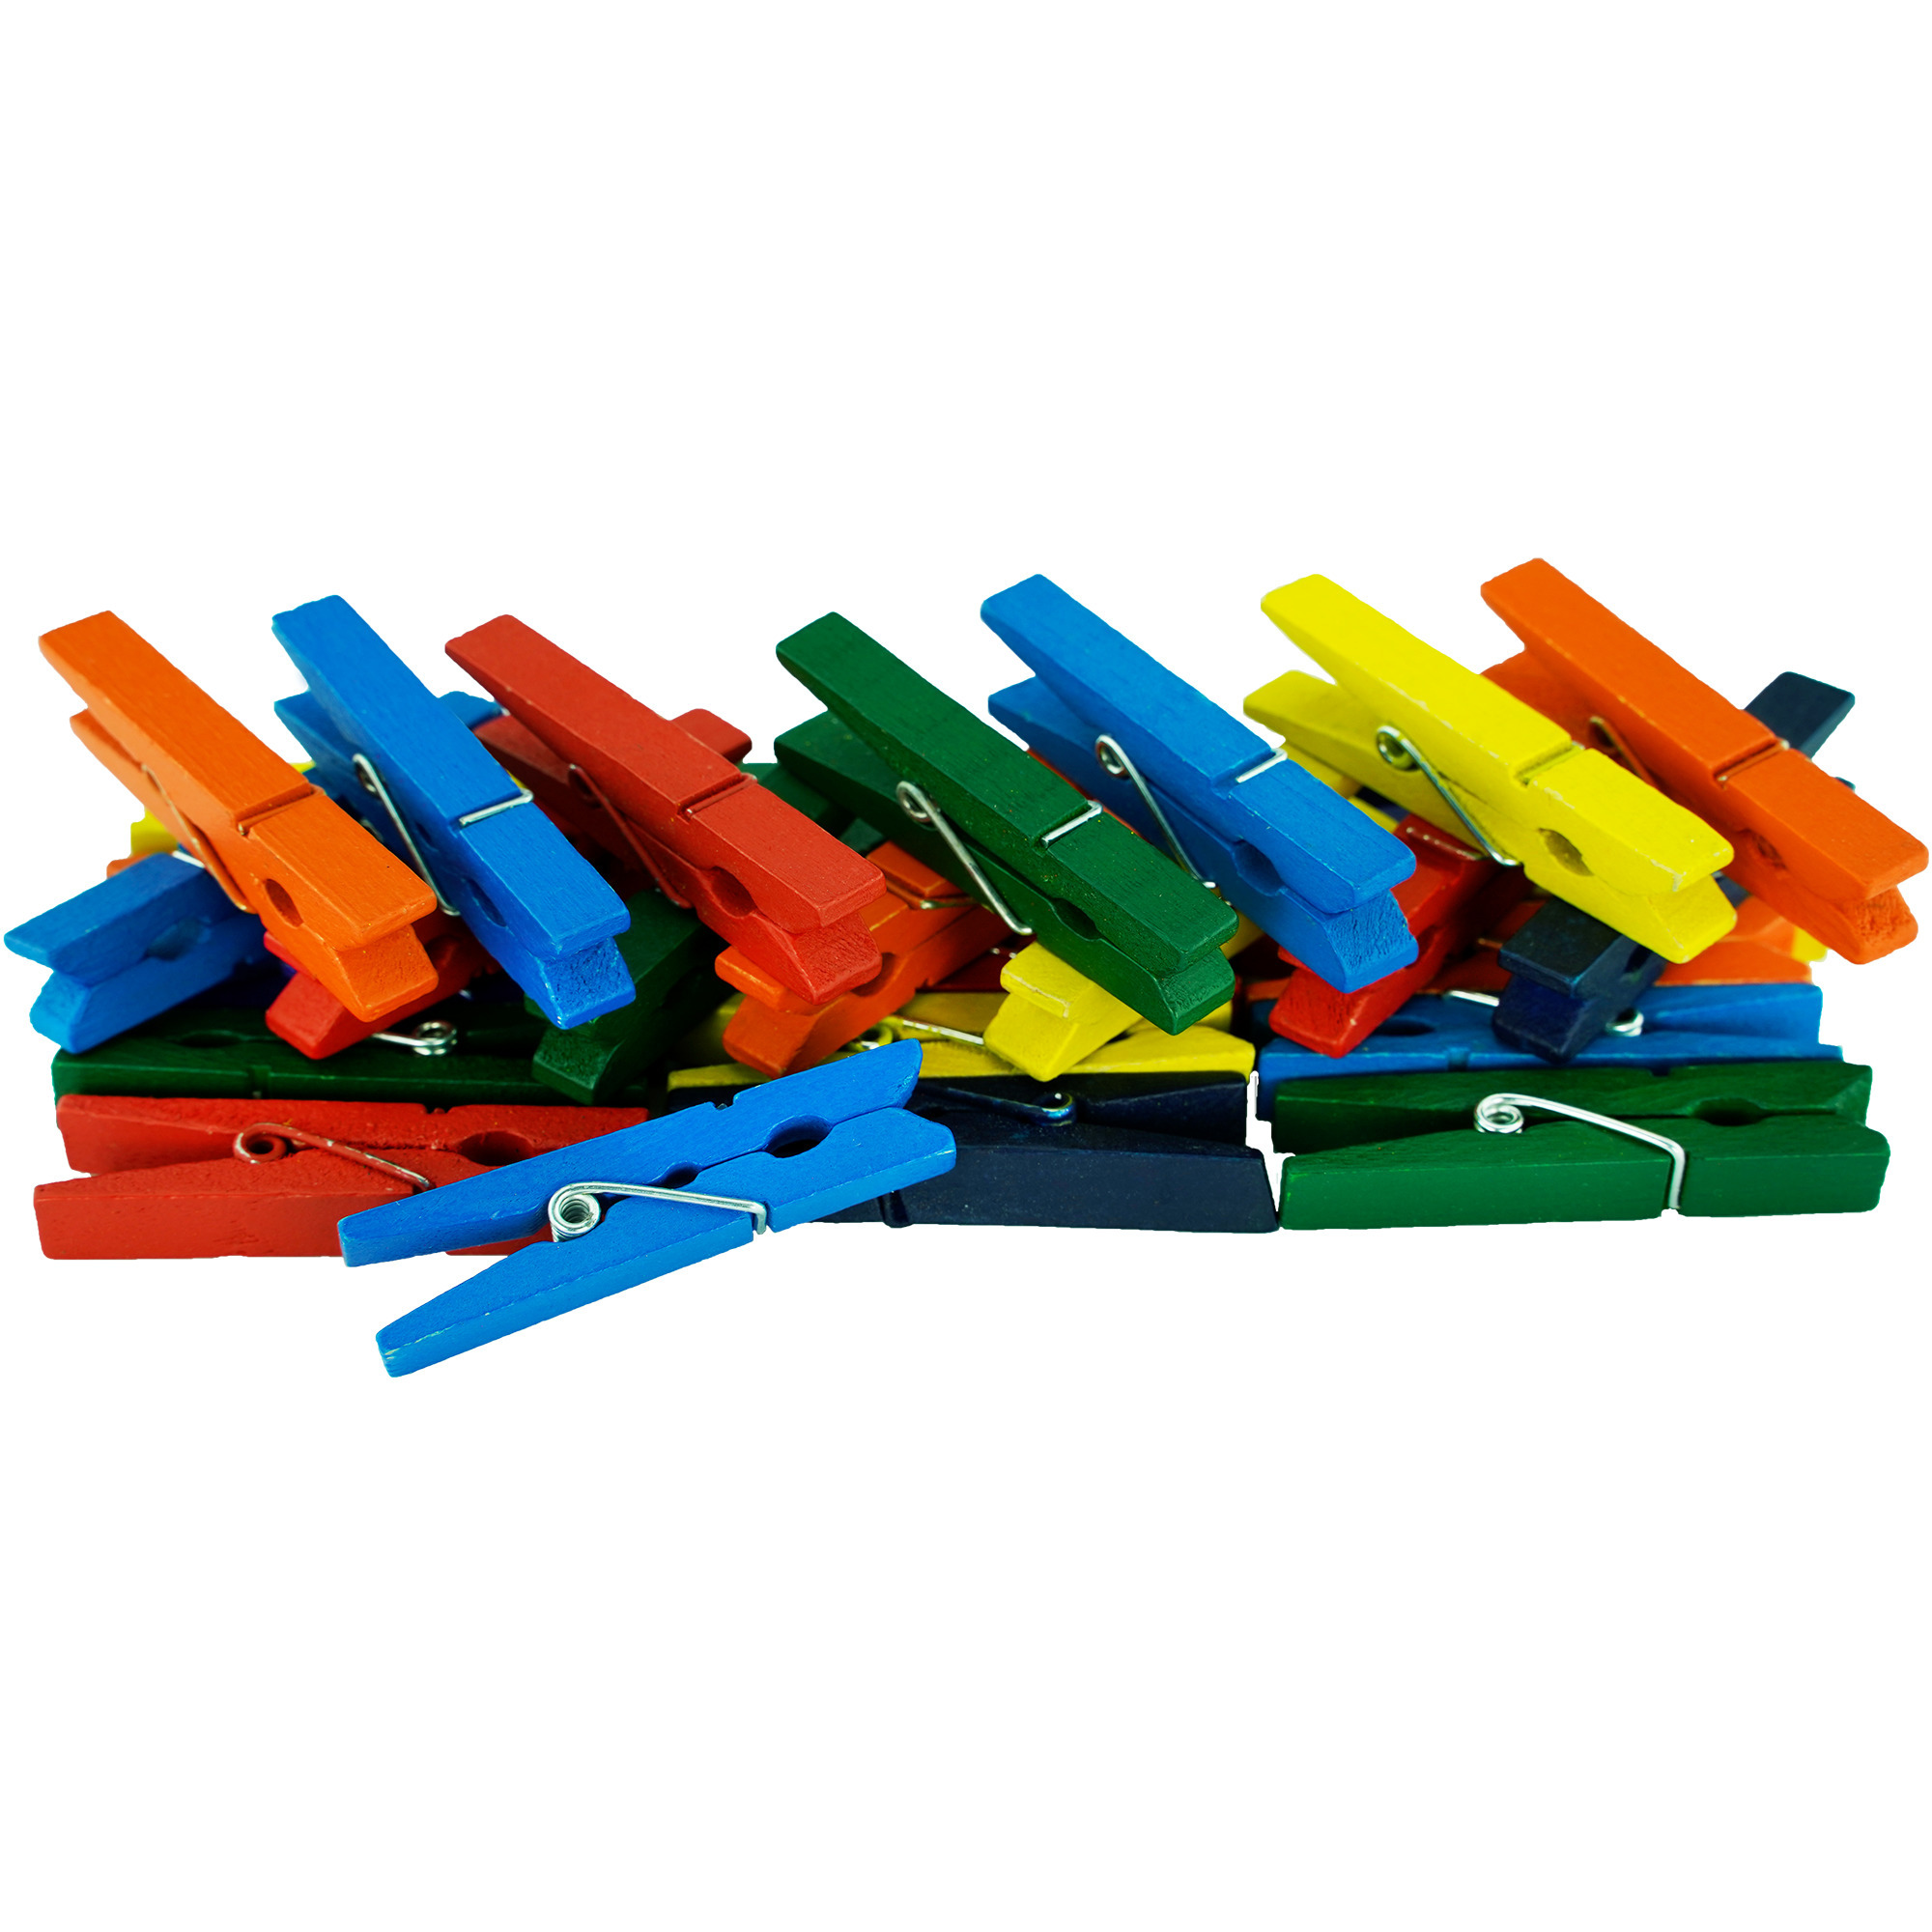 50x stuks multi-color kleur hobby knutselen mini knijpers/knijpertjes 4.5 cm